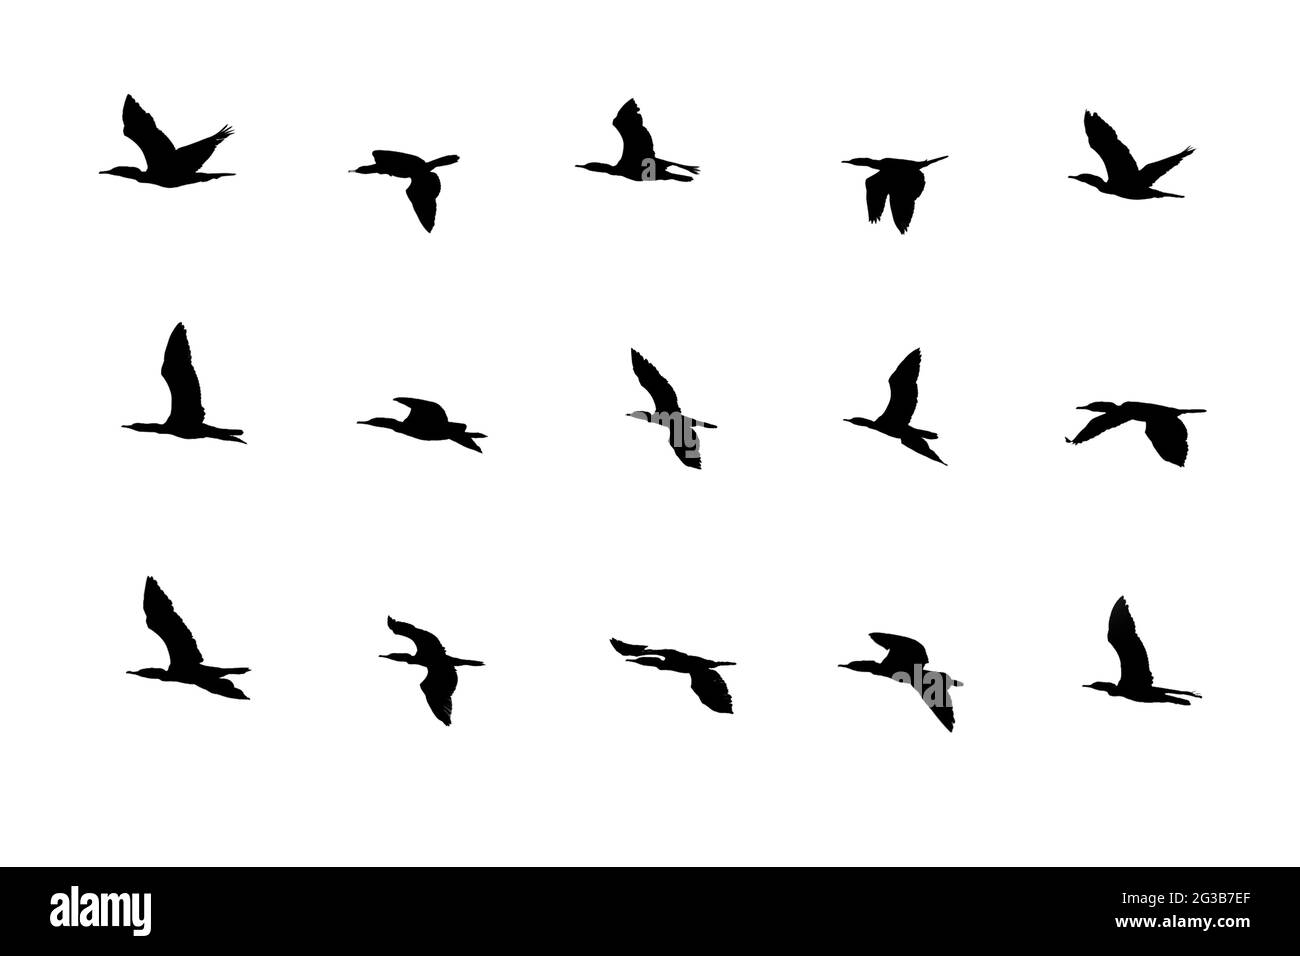 Collezione di uccelli silhouette in diverse azioni di volo isolate su sfondo bianco. Foto Stock